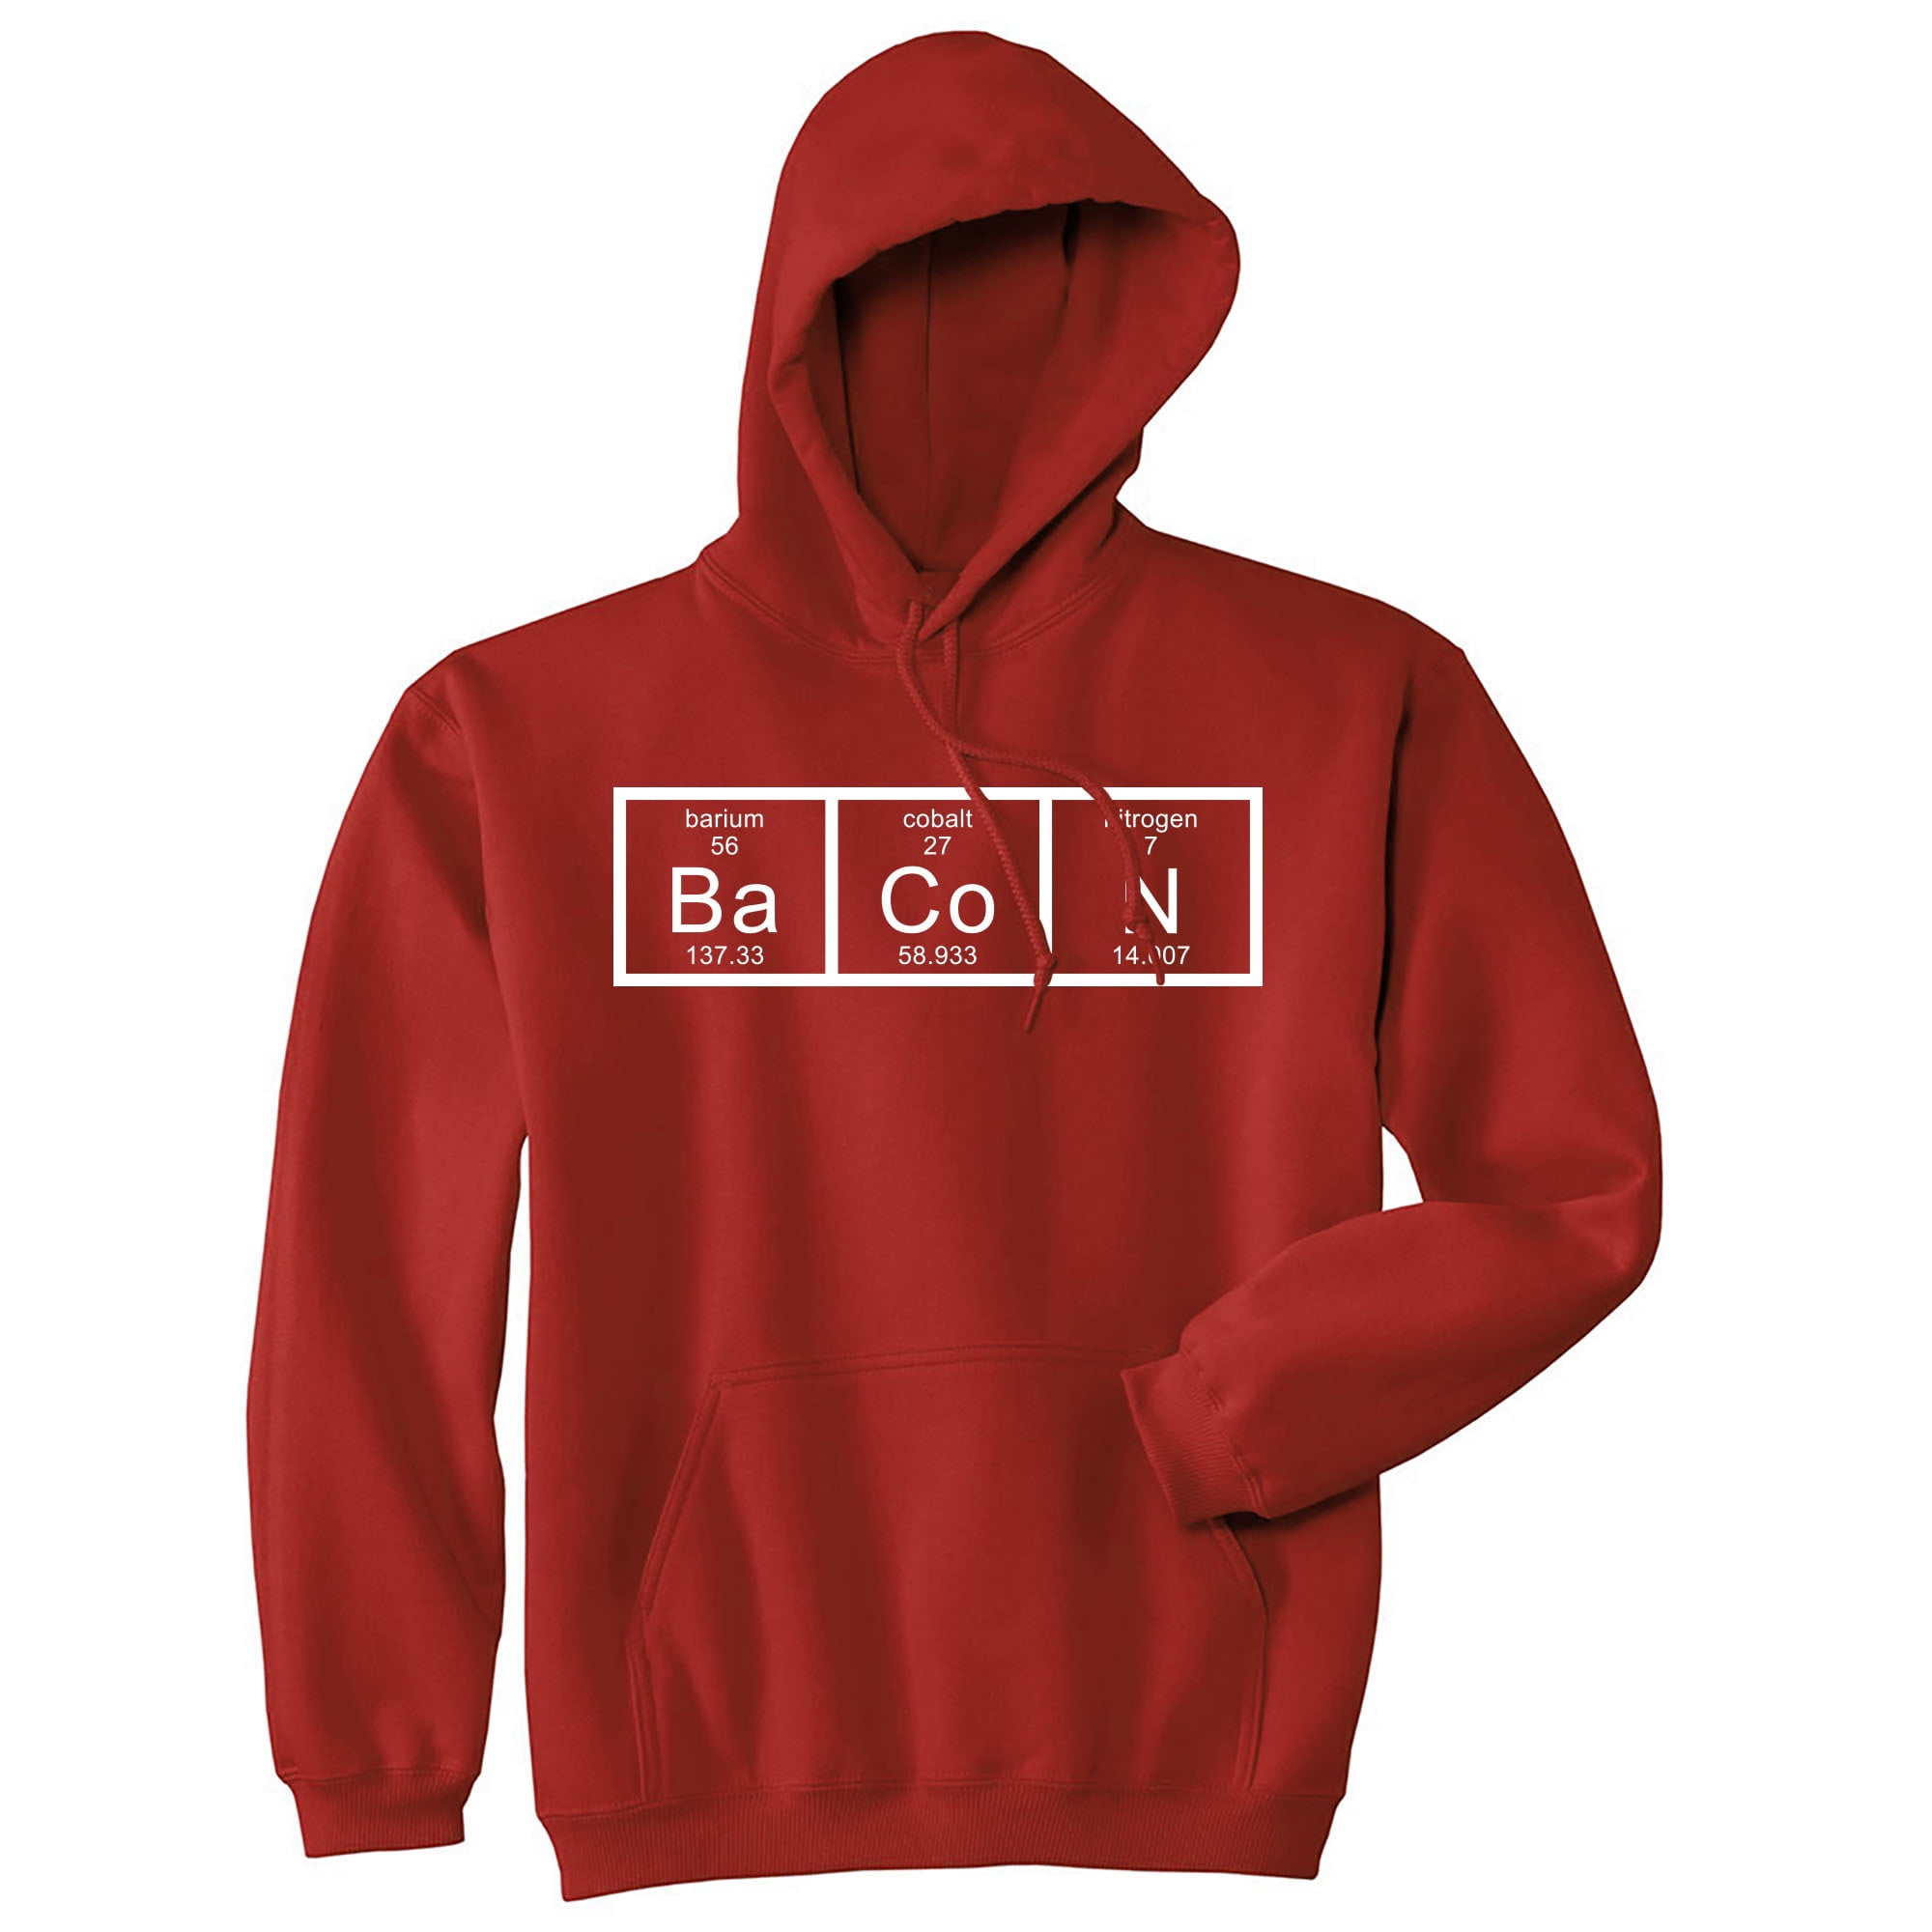 Ah Science Nerd Novelty Crazy Funny hoodie Geek The Element of Surprise hoodie Funny Humor hoodie